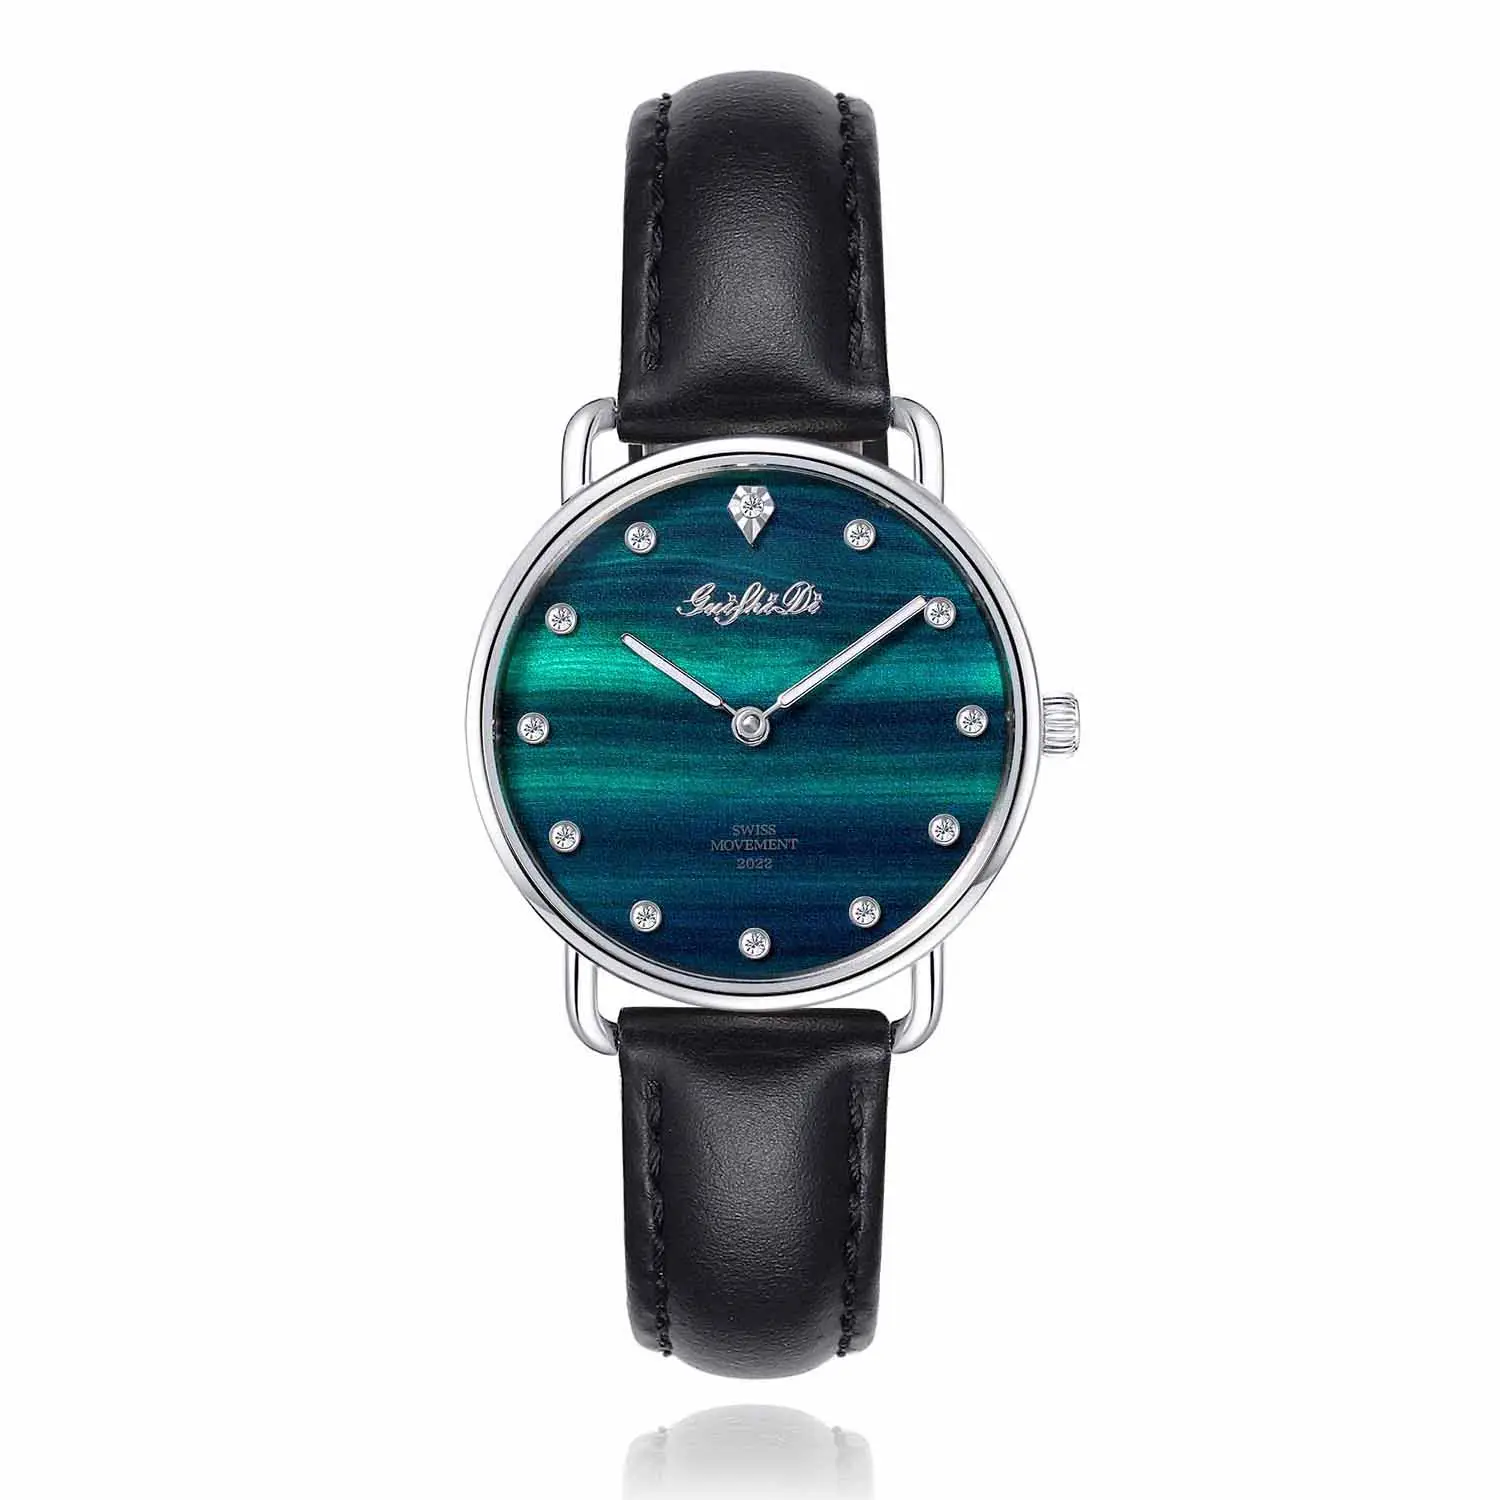 Guishidi relógio de pulso feminino, relógio de quartzo com pulseira de couro, analógico, resistente à água, 3 atm, para mulheres